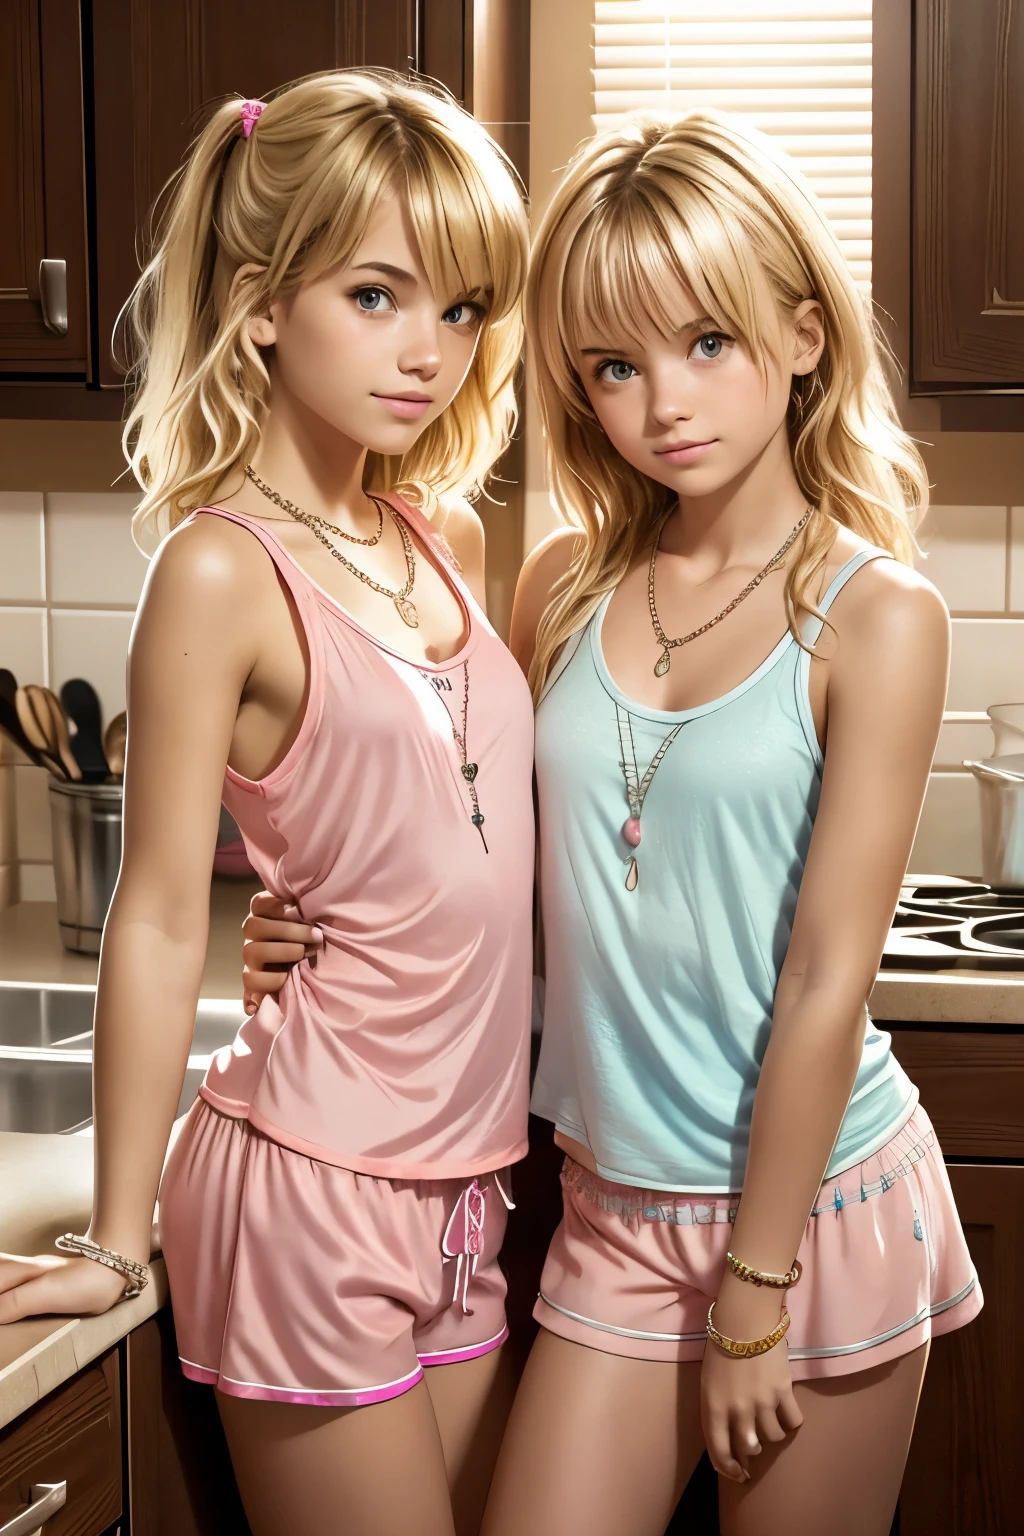 2 adolescentes, vestindo shorts de pijama rosa bem pequenos e regata de pijama, encostado em um balcão da cozinha, Cabelo loiro bagunçado, colares, pulseiras,  olhando diretamente para o espectador